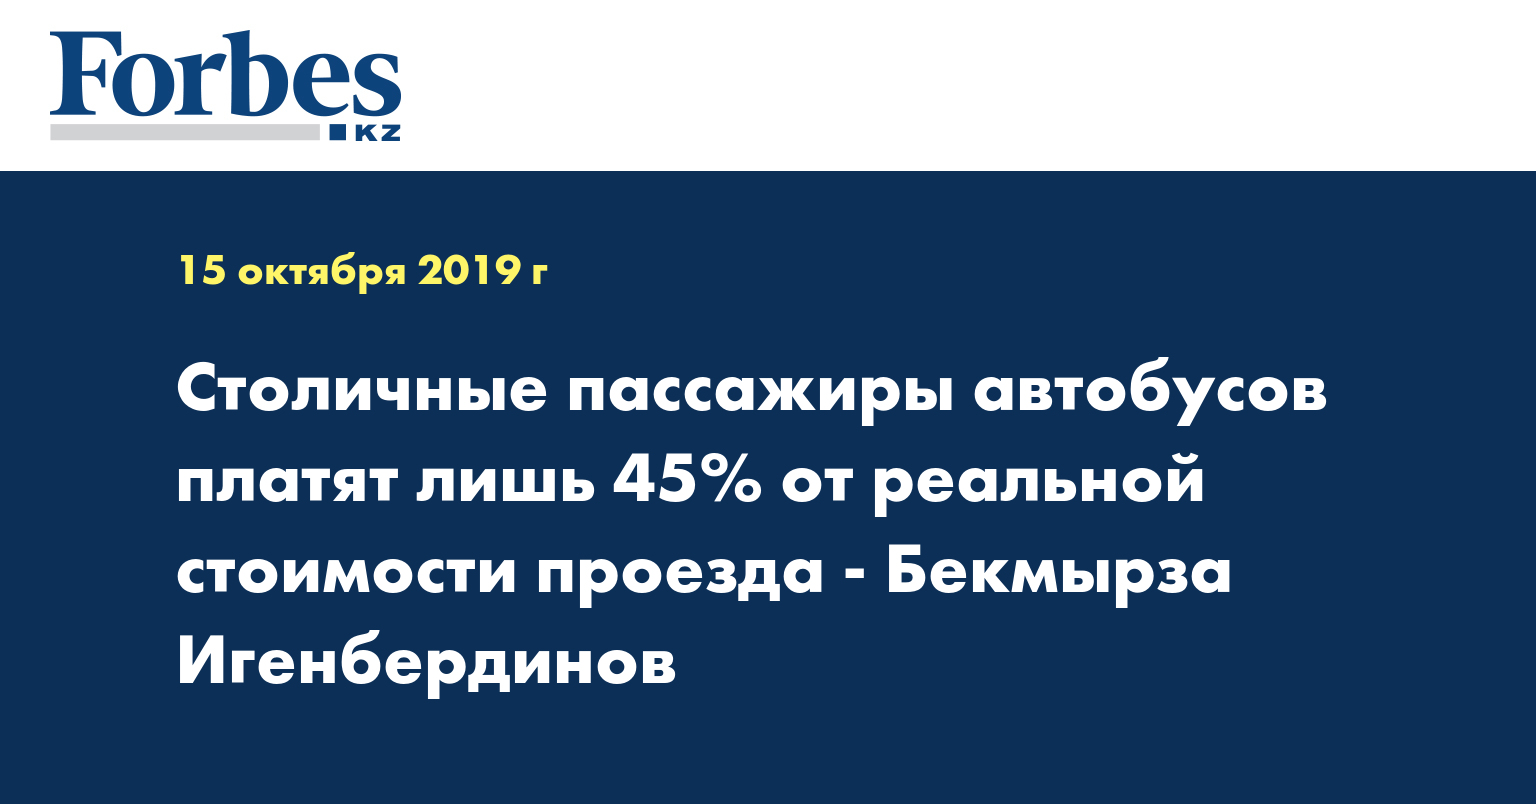 Столичные пассажиры автобусов платят лишь 45% от реальной стоимости проезда - Бекмырза Игенбердинов